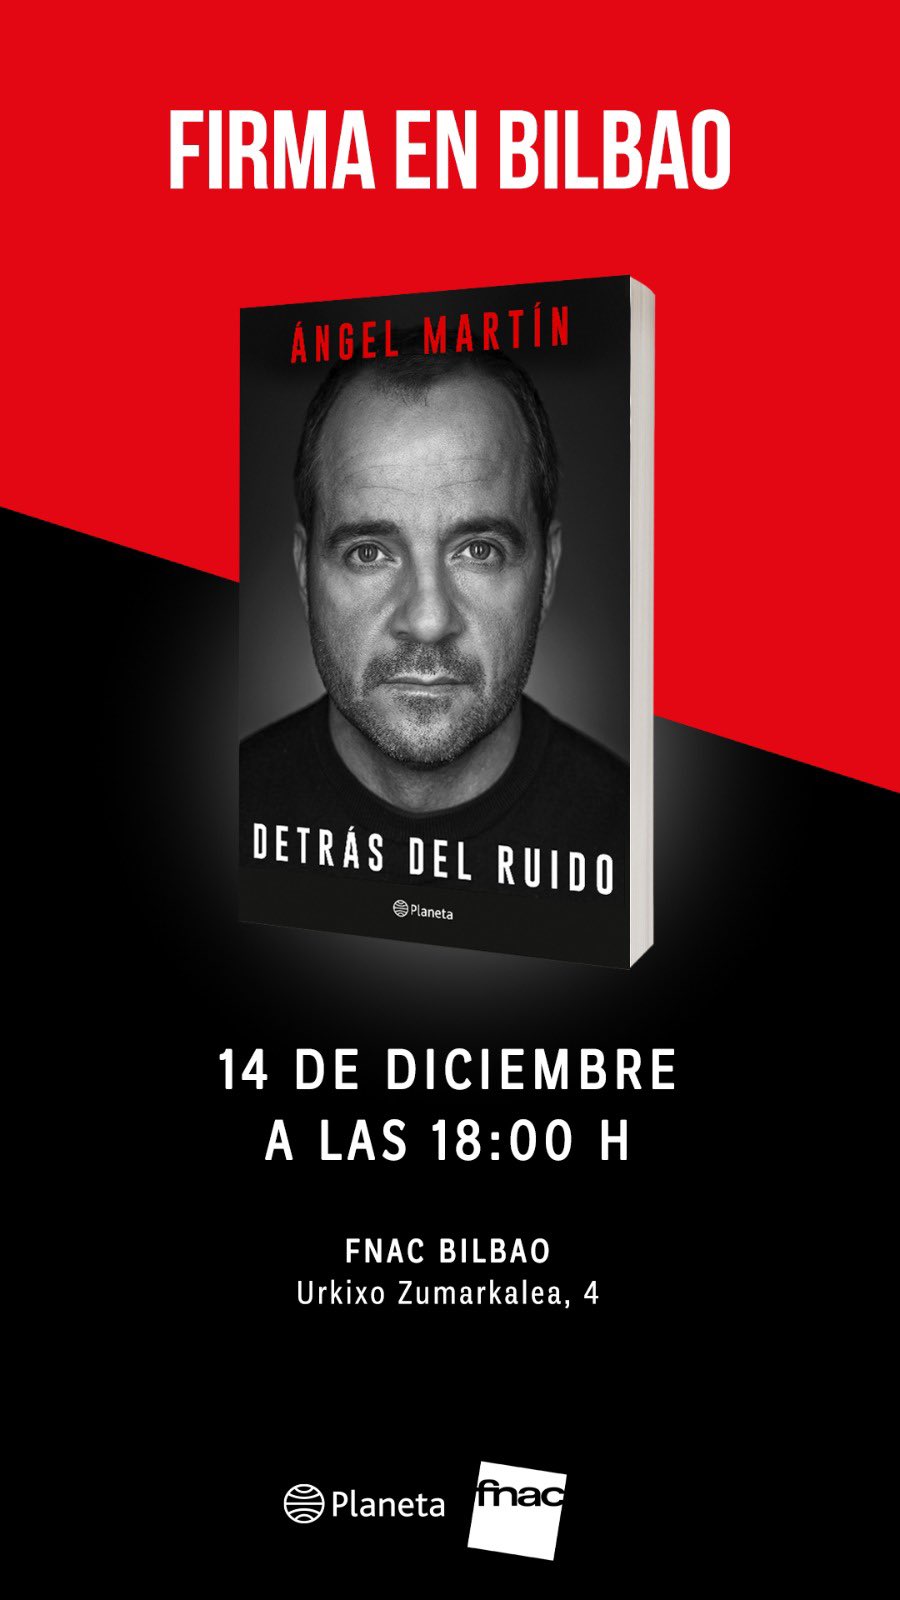 Ángel Martín on X: ¡Bilbao! Si mañana te apetece, yo estaré firmando  libros de “Detrás del ruido” ( justo aquí :   / X